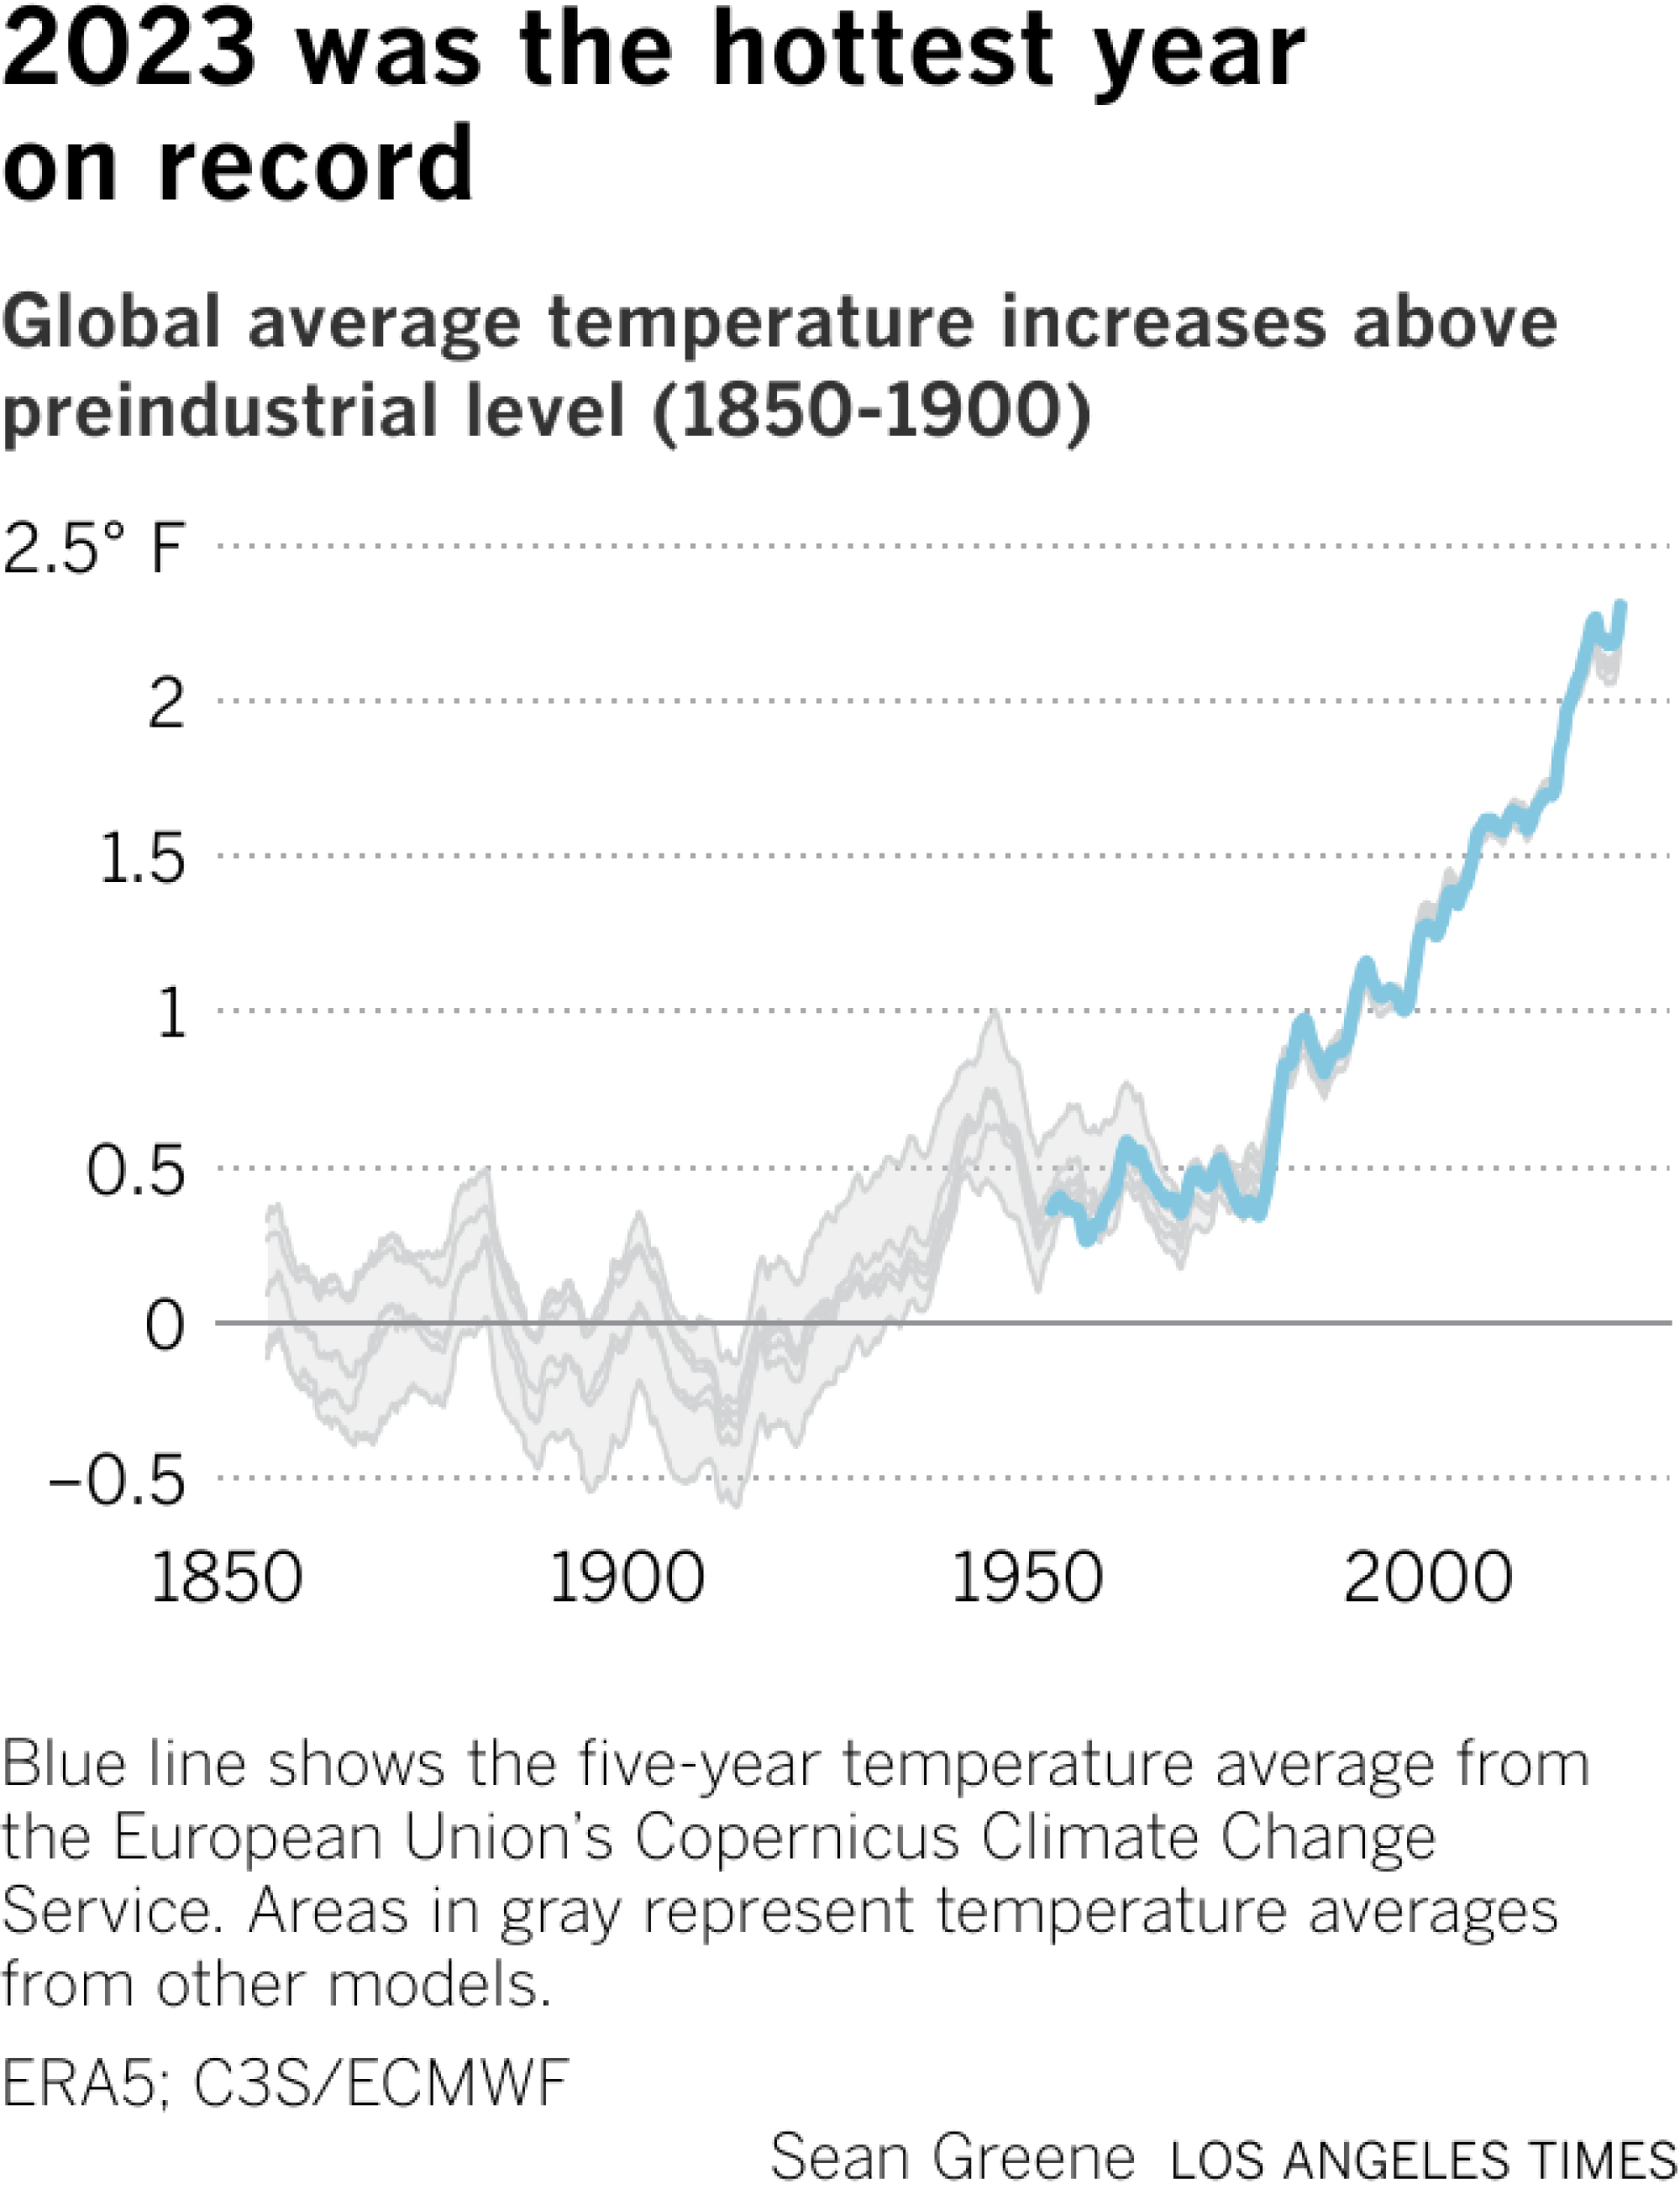 Das Liniendiagramm zeigt die von Kopernikus und anderen Quellen geschätzten durchschnittlichen Temperaturänderungen seit 1850. Die Temperaturen sind seit etwa 1975 stetig gestiegen.